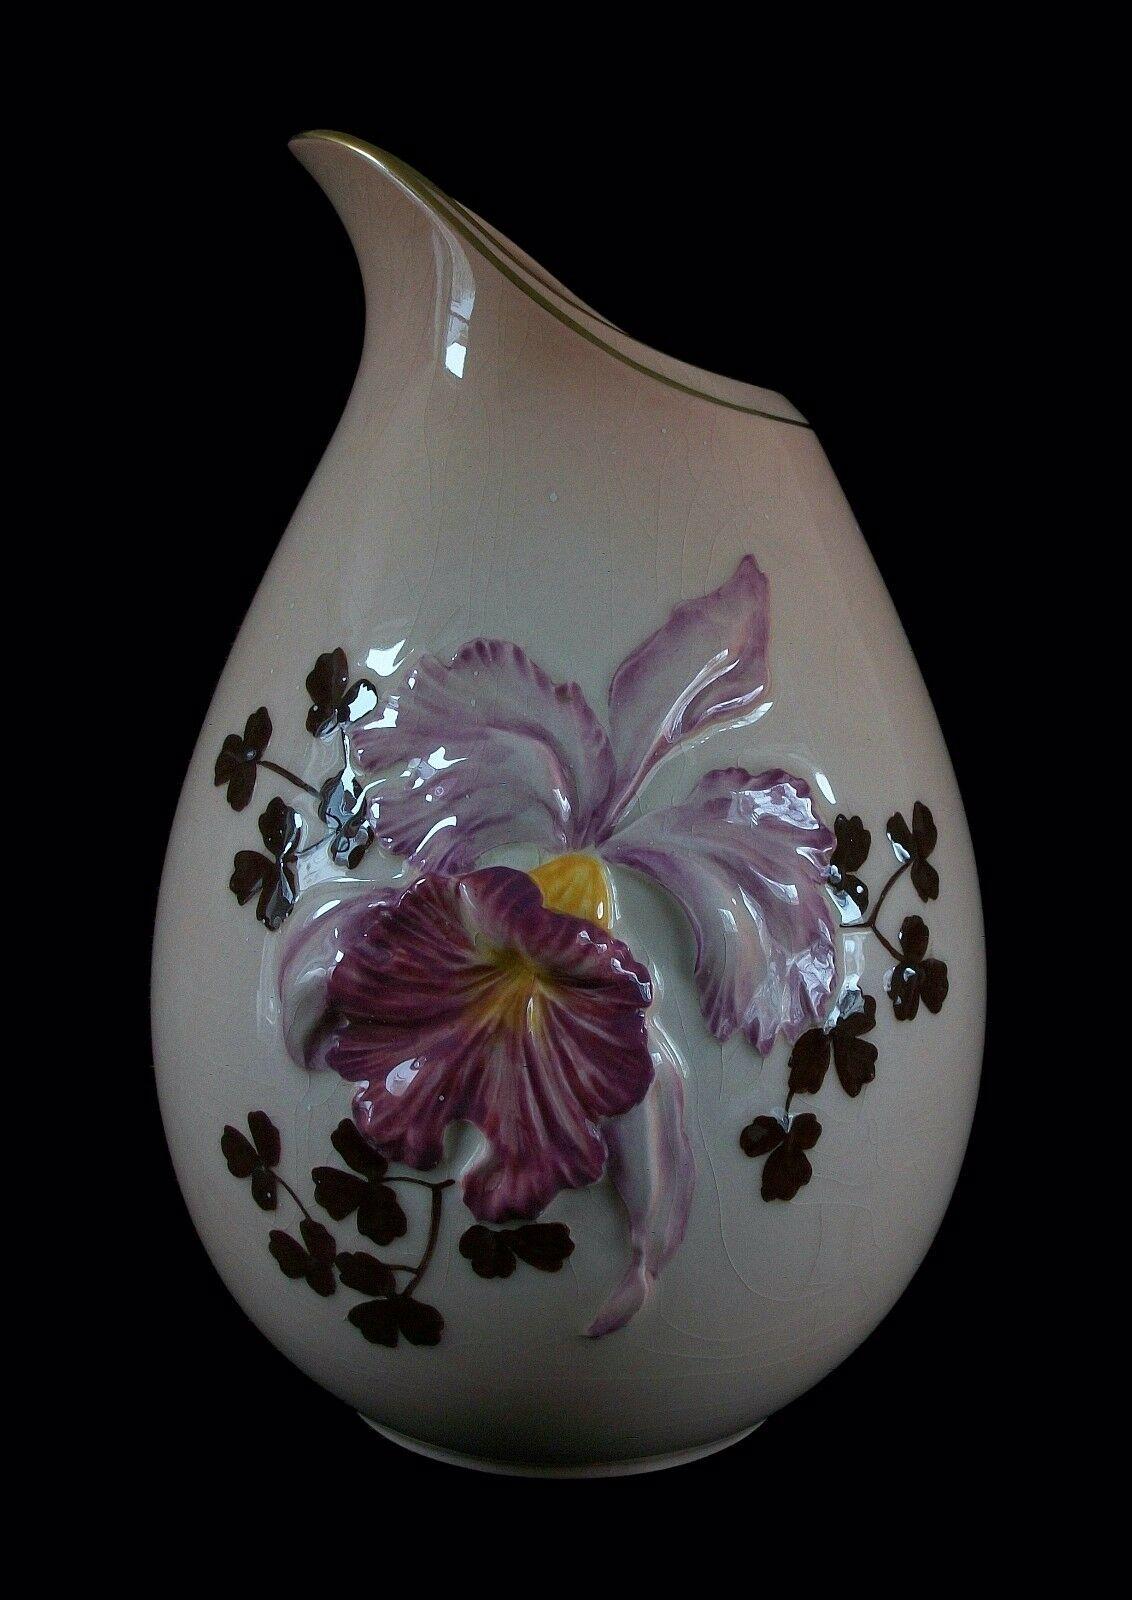 CARLTON WARE - Australisches Design - Geprägtes Orchideenmuster - Seltene große, handbemalte, rosafarbene Keramikvase mit braunen Kleeblättern - Goldvergoldung am Rand - signiert auf dem Boden - Vereinigtes Königreich - Mitte 20. 

Ausgezeichneter